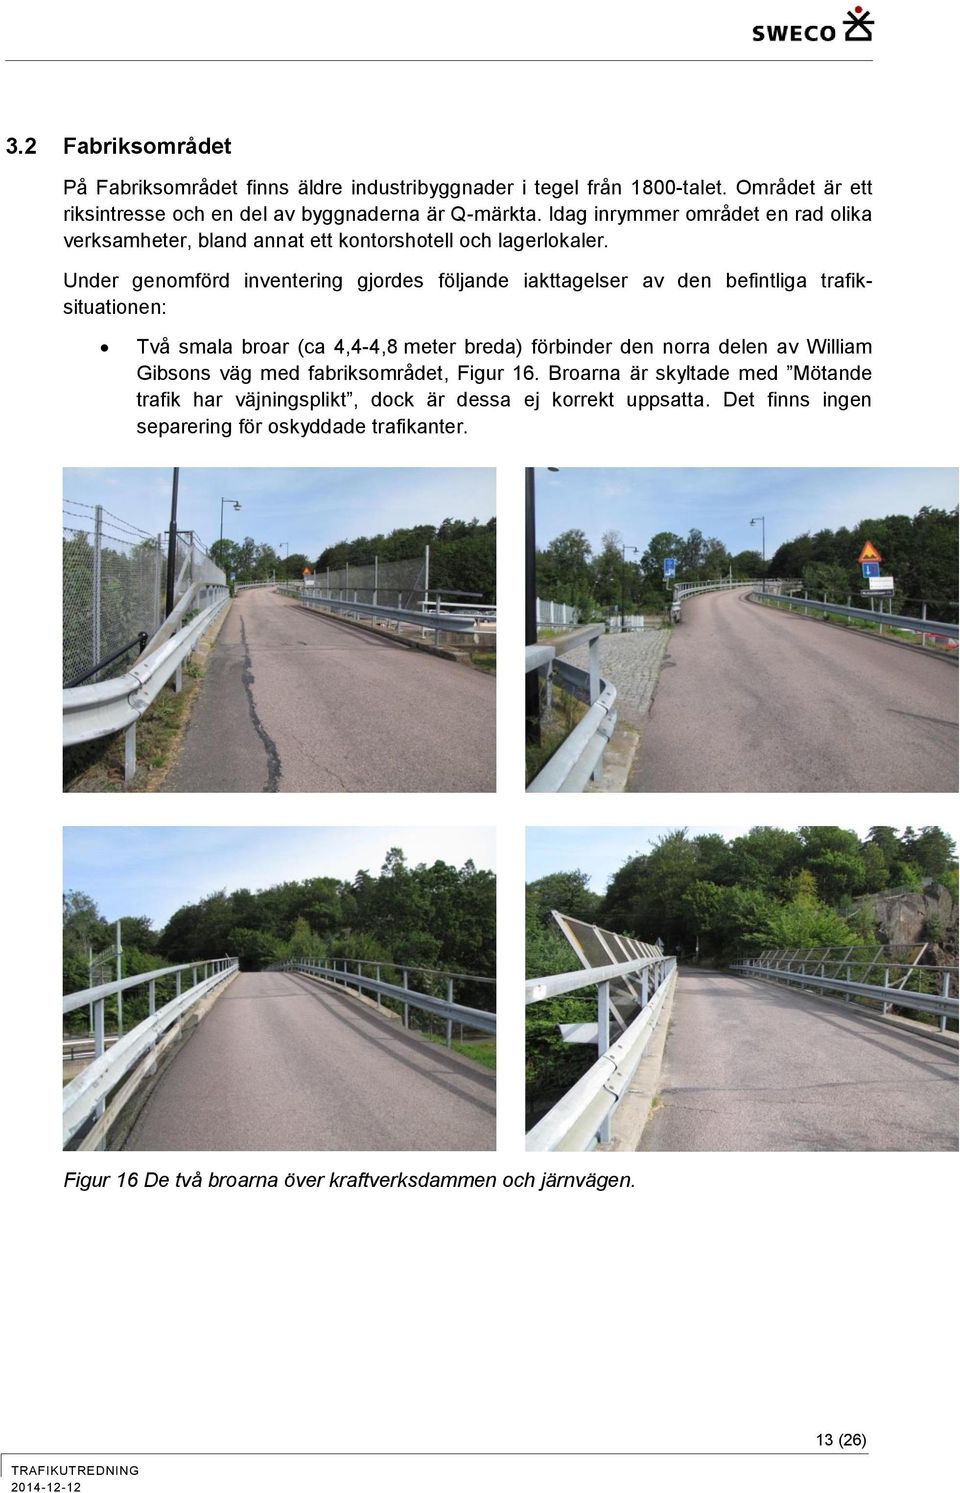 Under genomförd inventering gjordes följande iakttagelser av den befintliga trafiksituationen: Två smala broar (ca 4,4-4,8 meter breda) förbinder den norra delen av